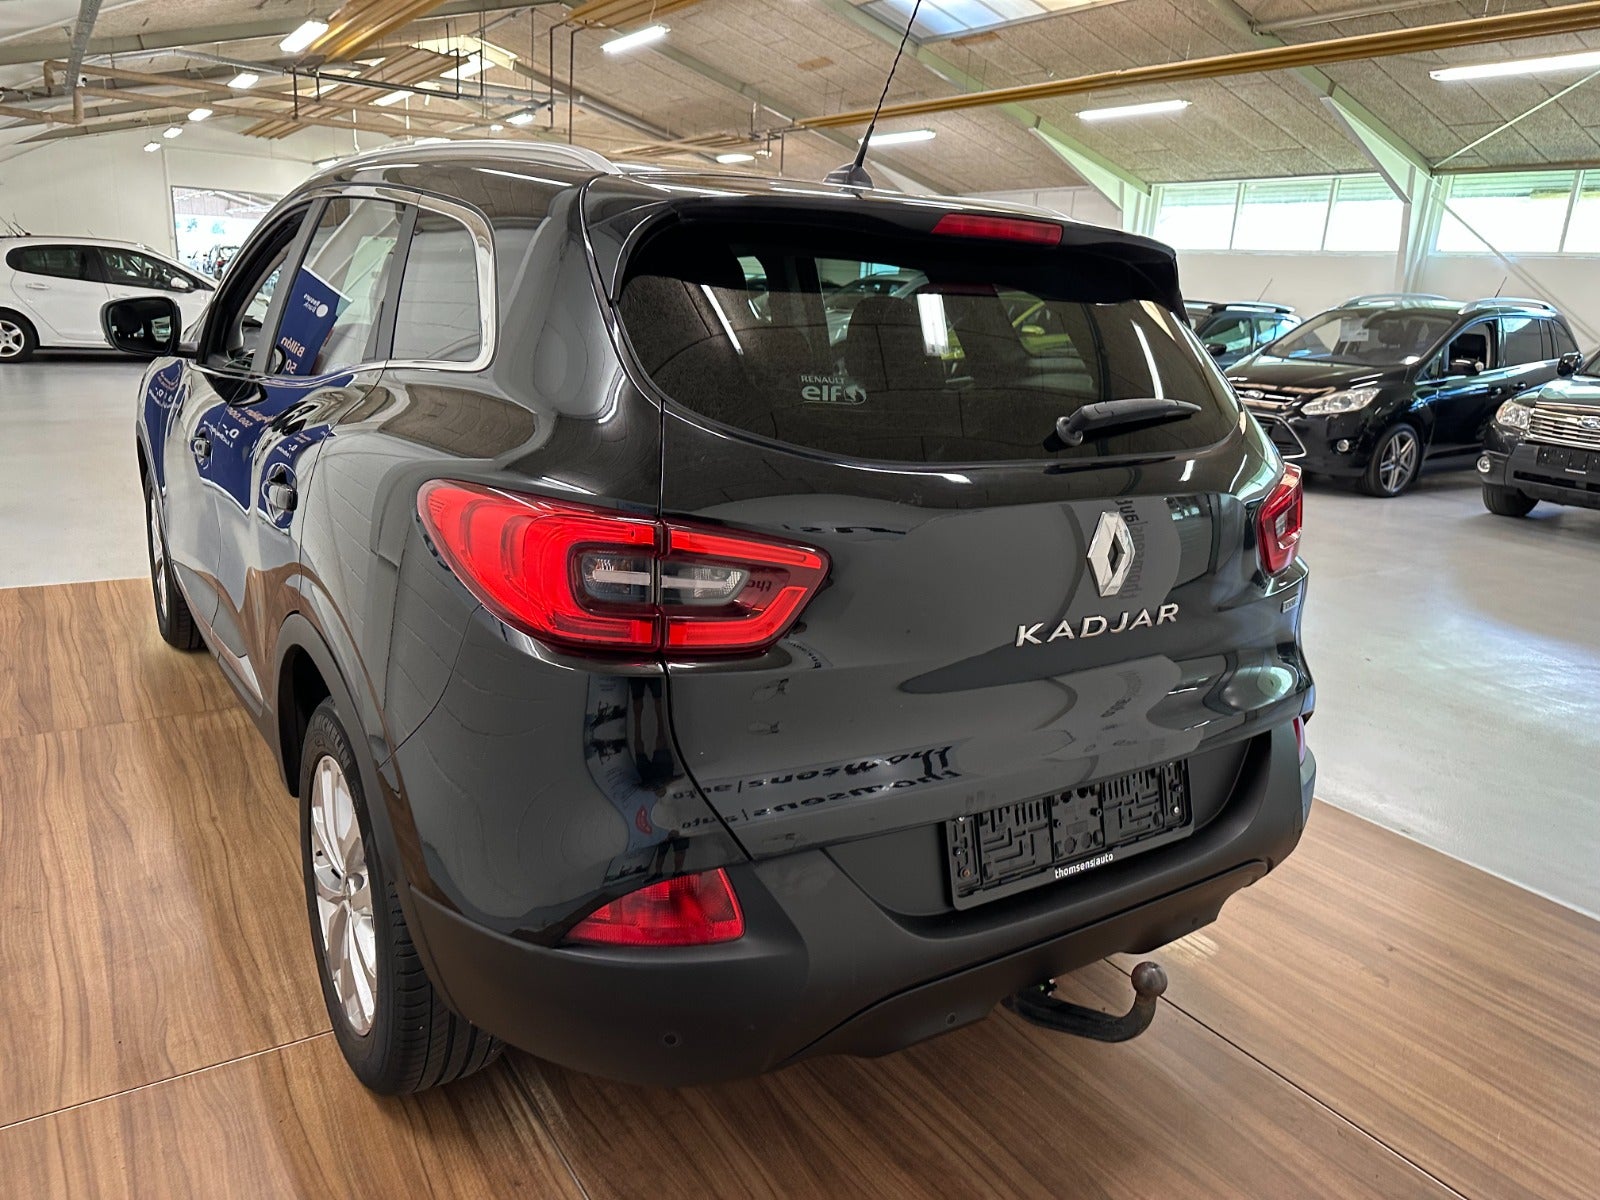 Renault Kadjar 2018